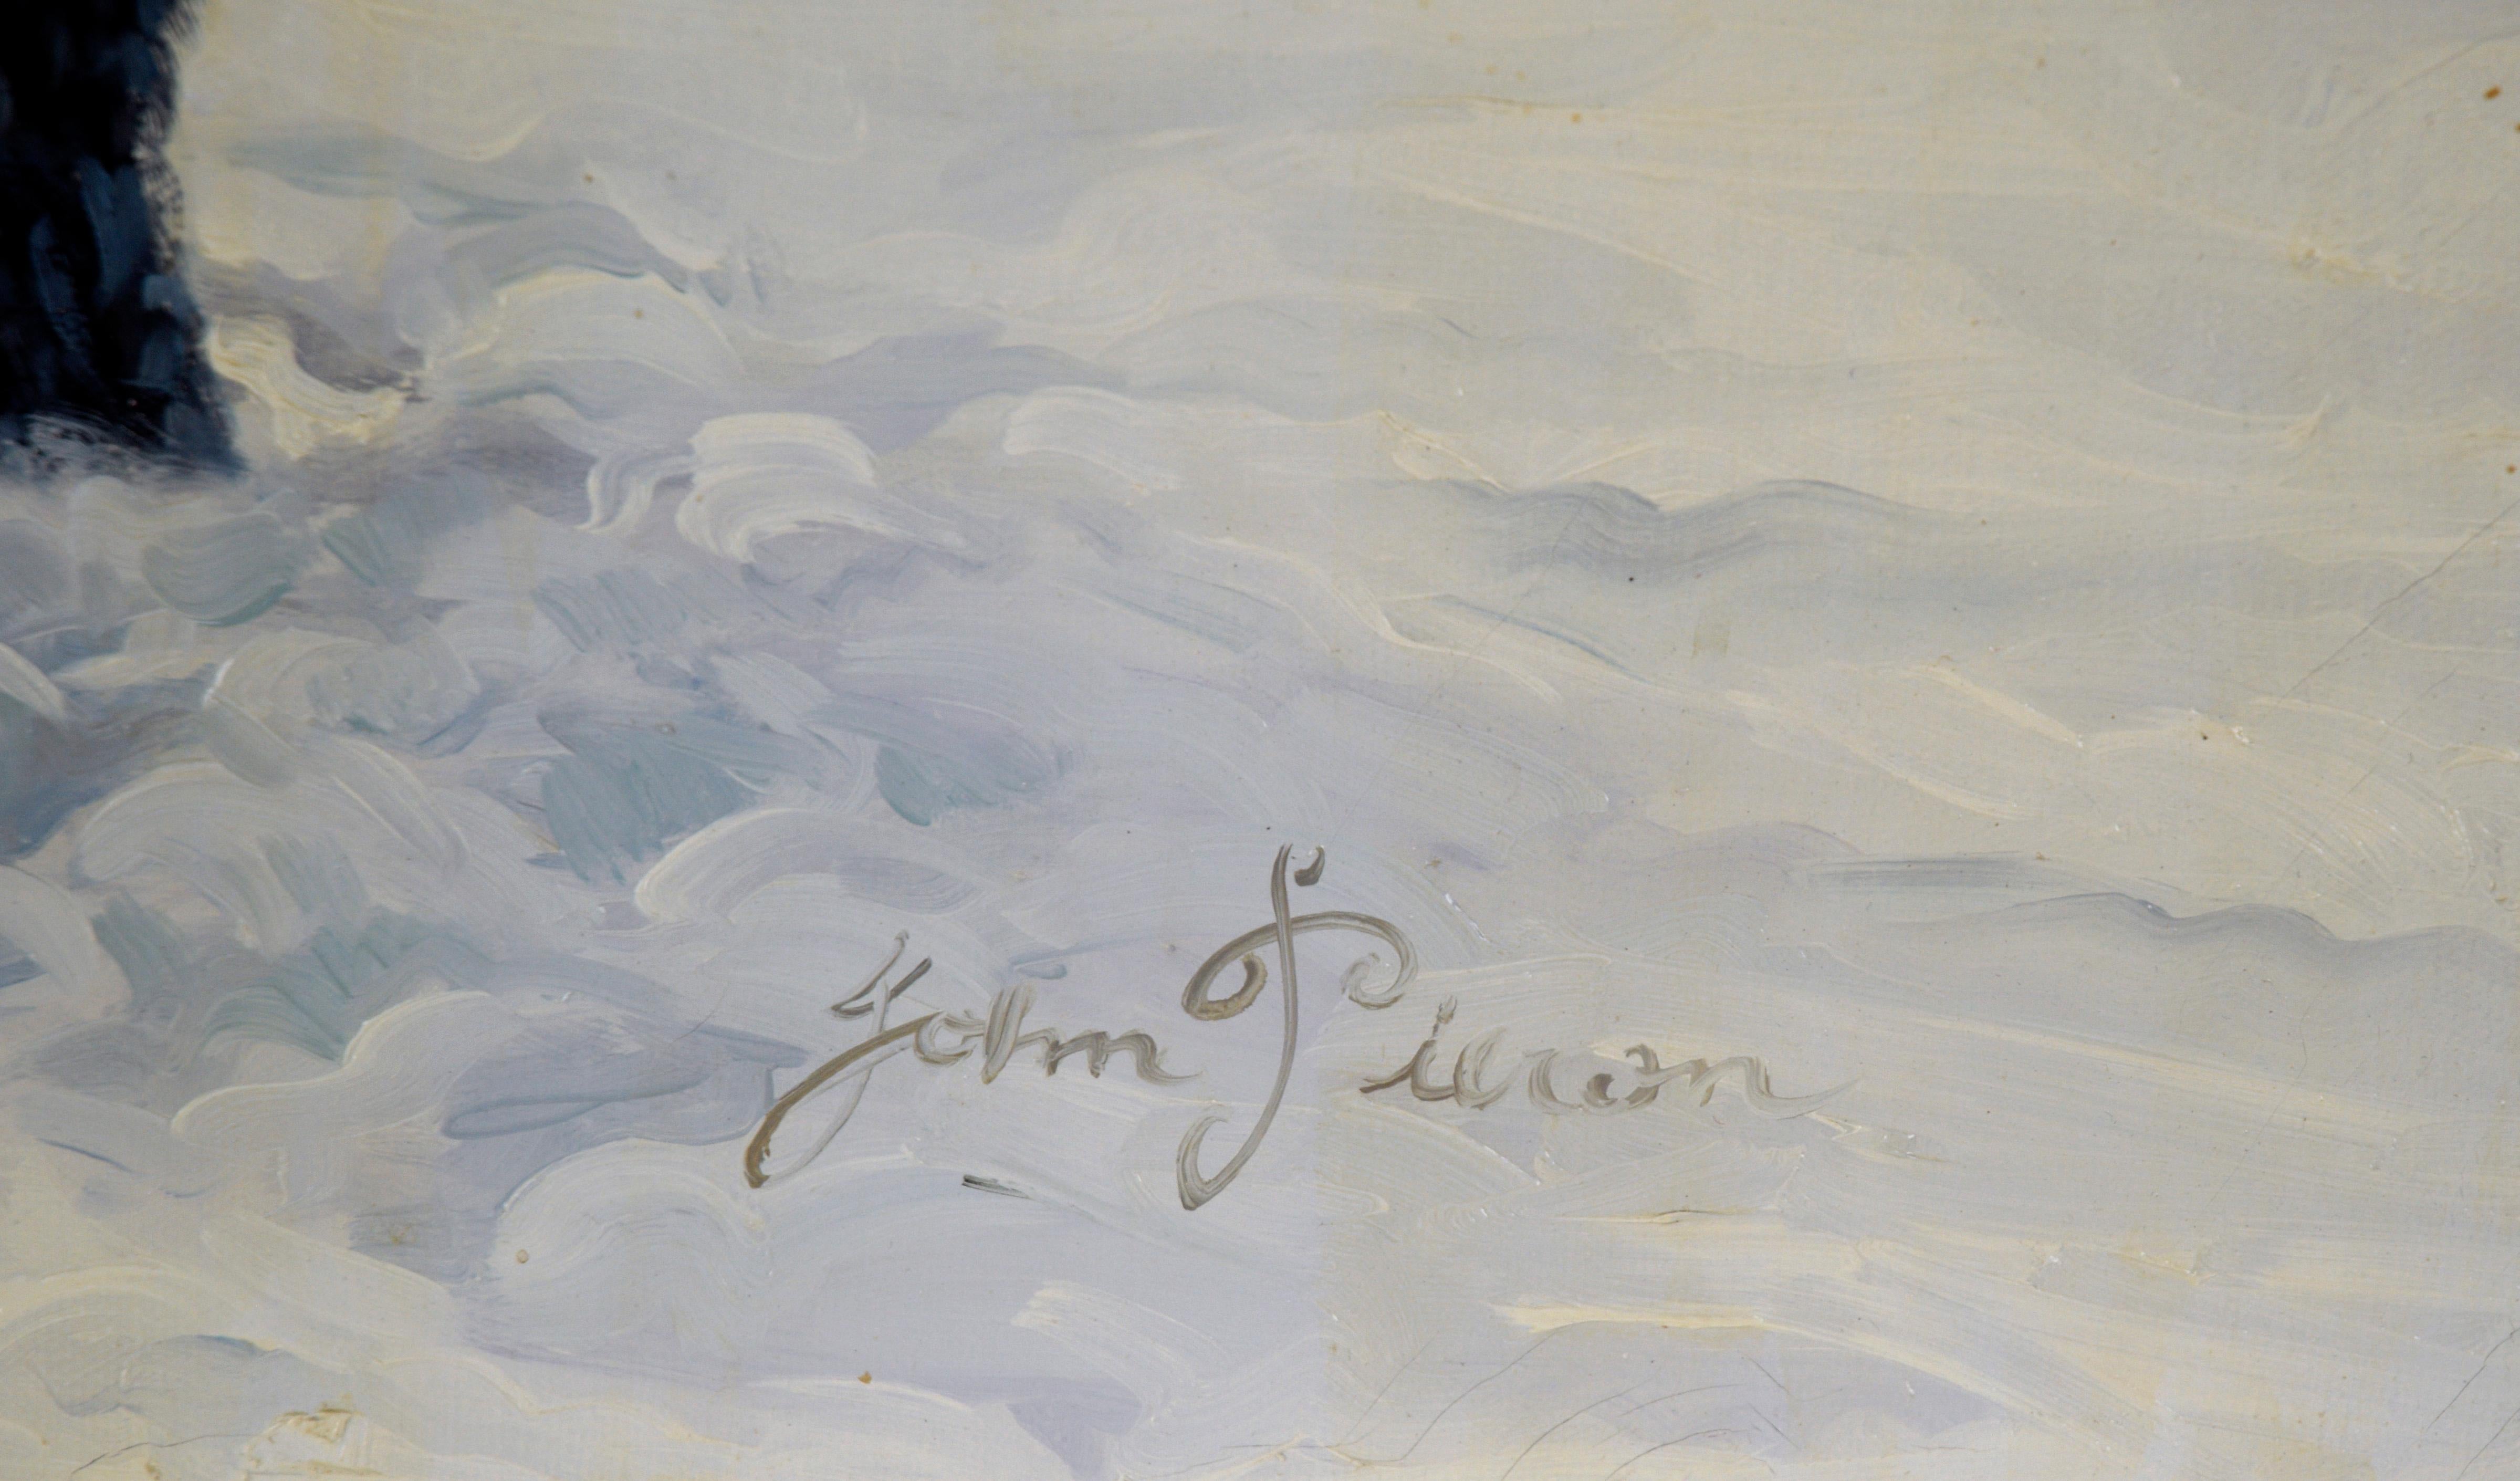 Trappeur en hiver - Portrait à l'huile sur toile

Majestic portrait en pied d'un trappeur de fourrure debout dans la neige par John Pieron. Un homme se tient debout dans la neige jusqu'aux chevilles, un fusil à la main. Il est vêtu d'un lourd